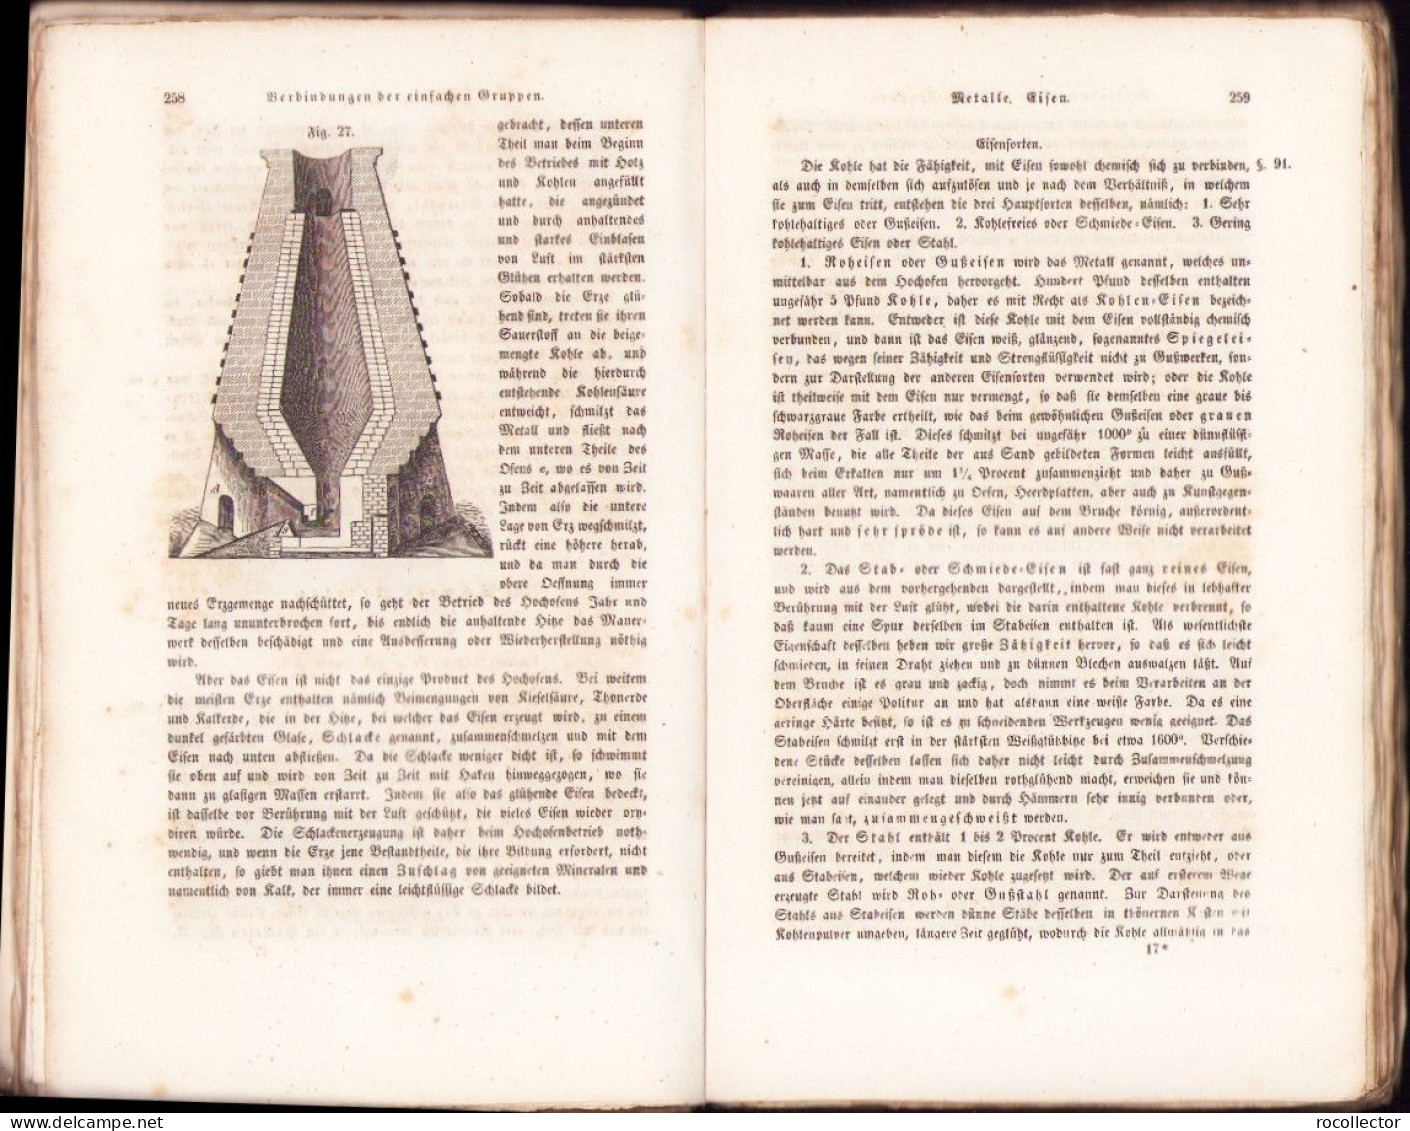 Das Buch der Natur, die Lehren der Physik, Astronomie, Chemie, Mineralogie, Geologie ... von Friedrich Schoedler 1850